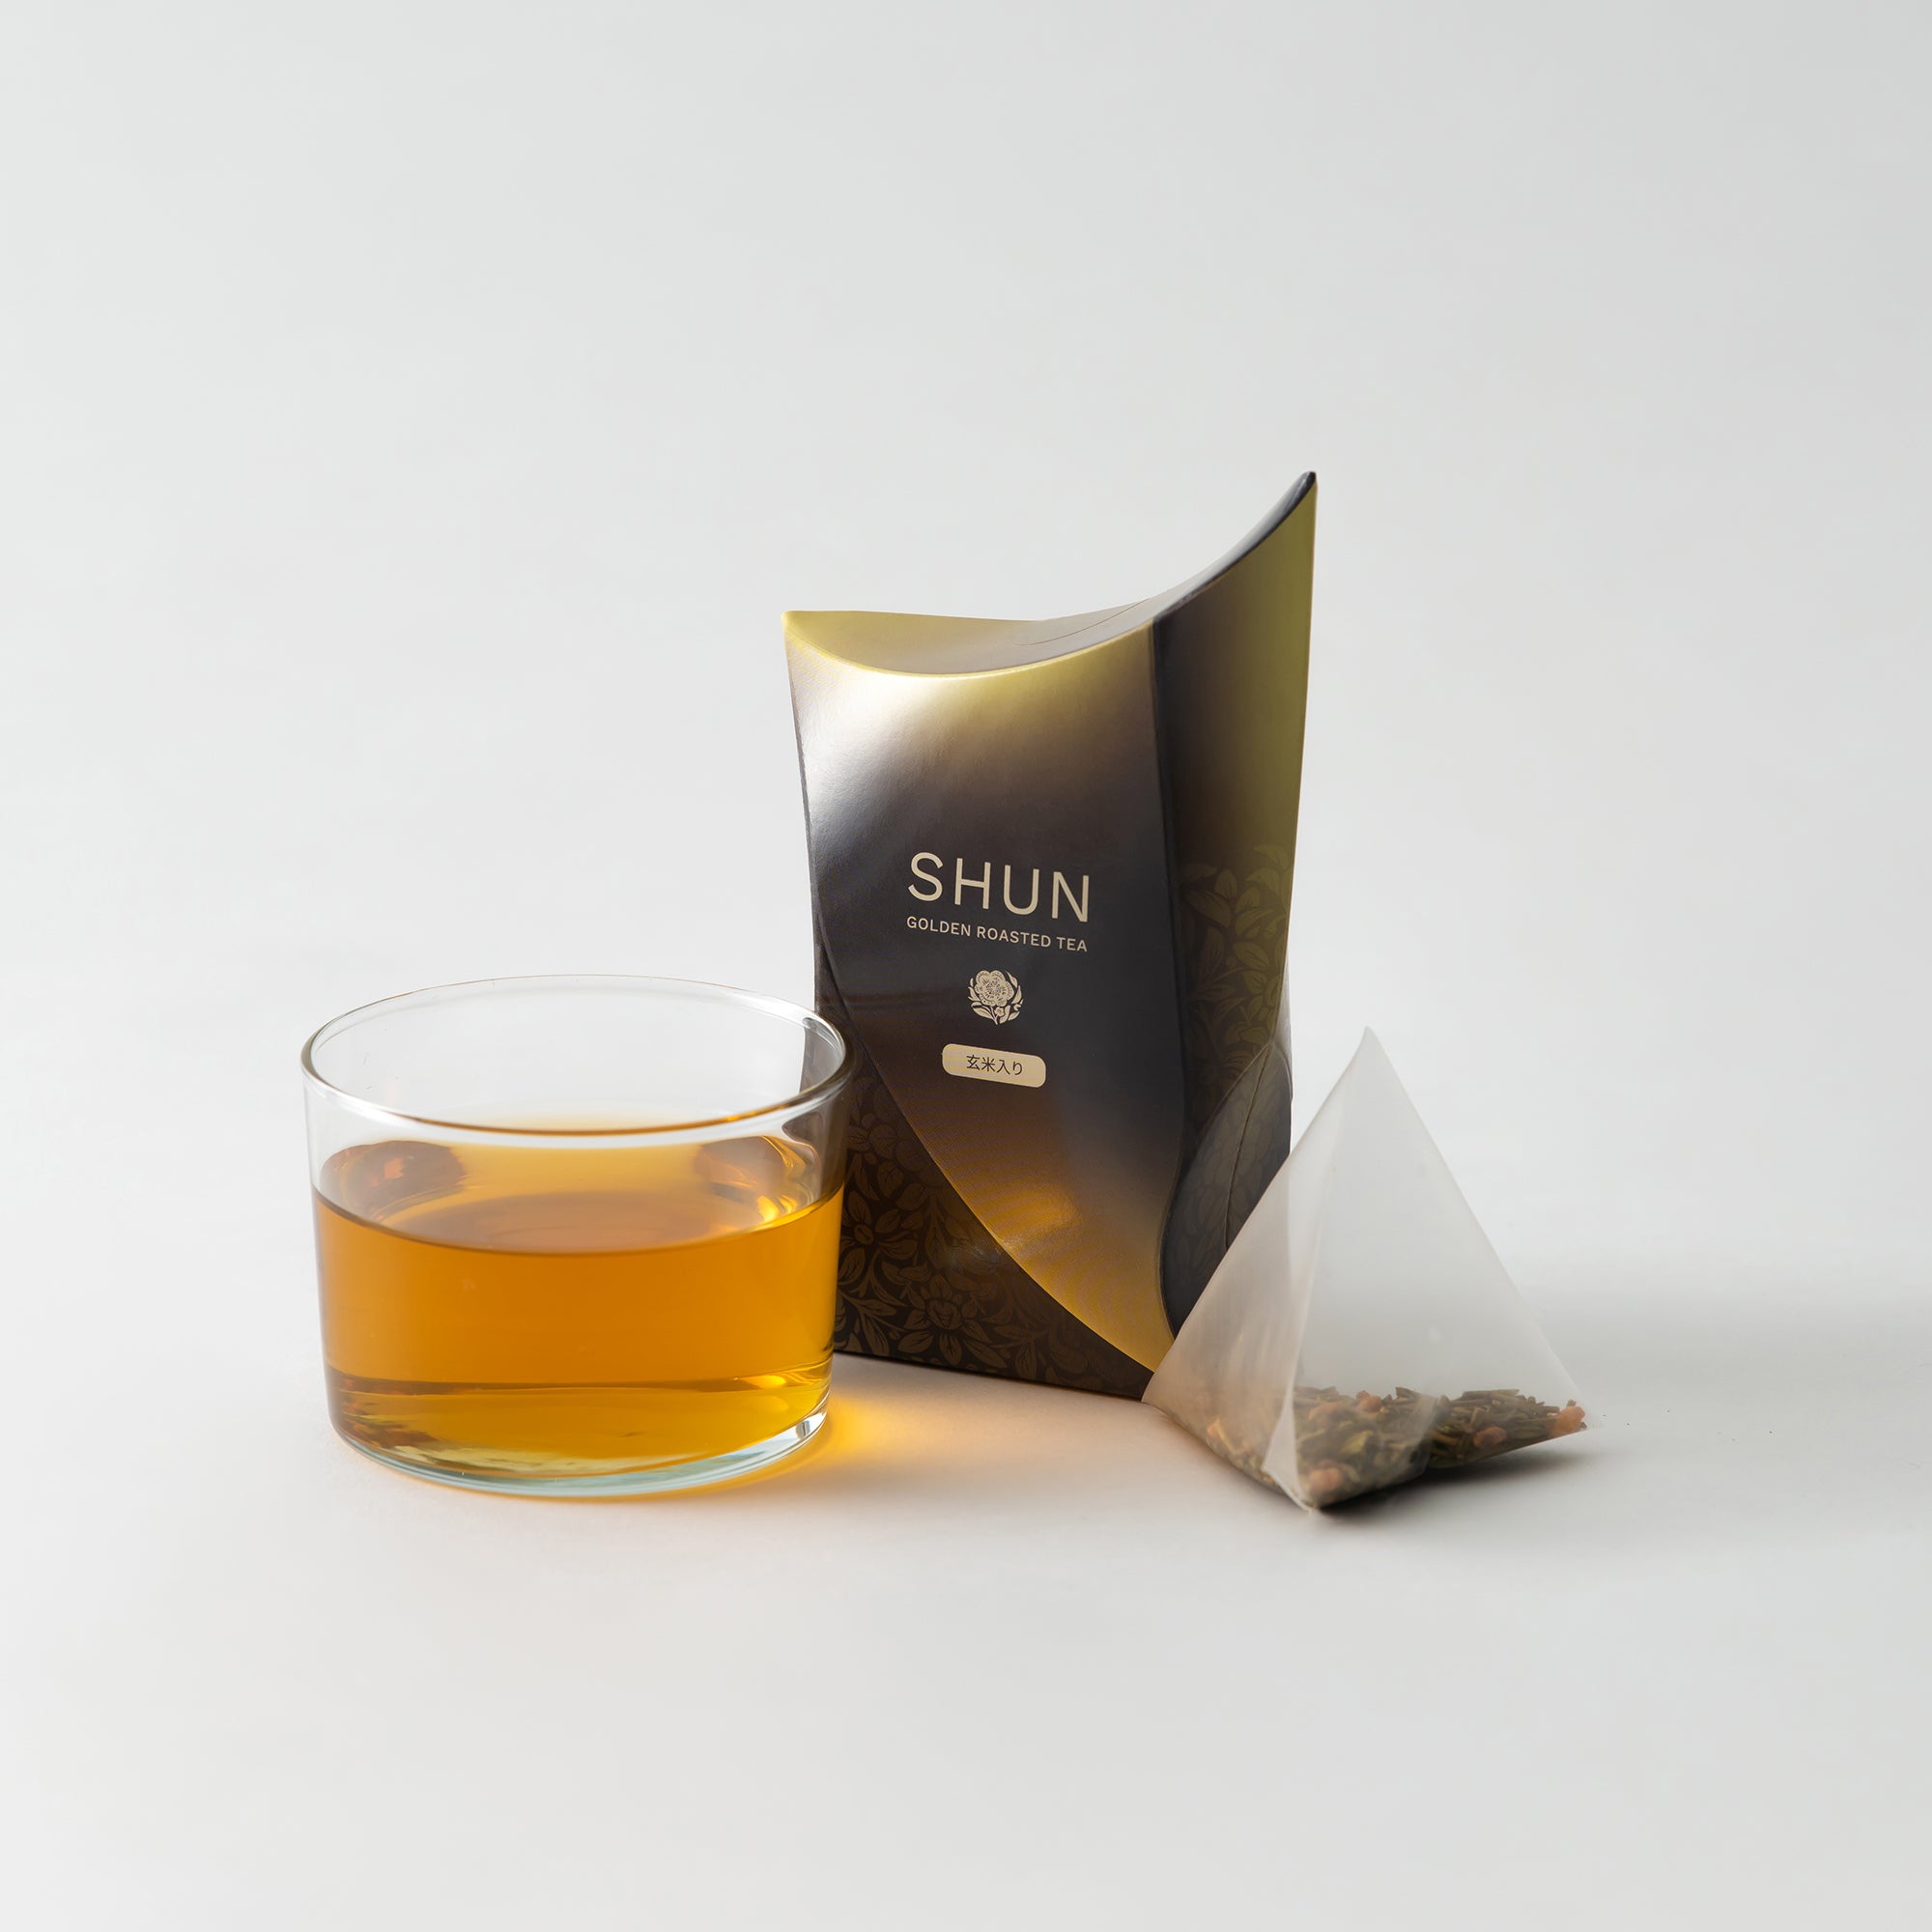 金棒茶「SHUN - 玄米ブレンド -」 -箱-